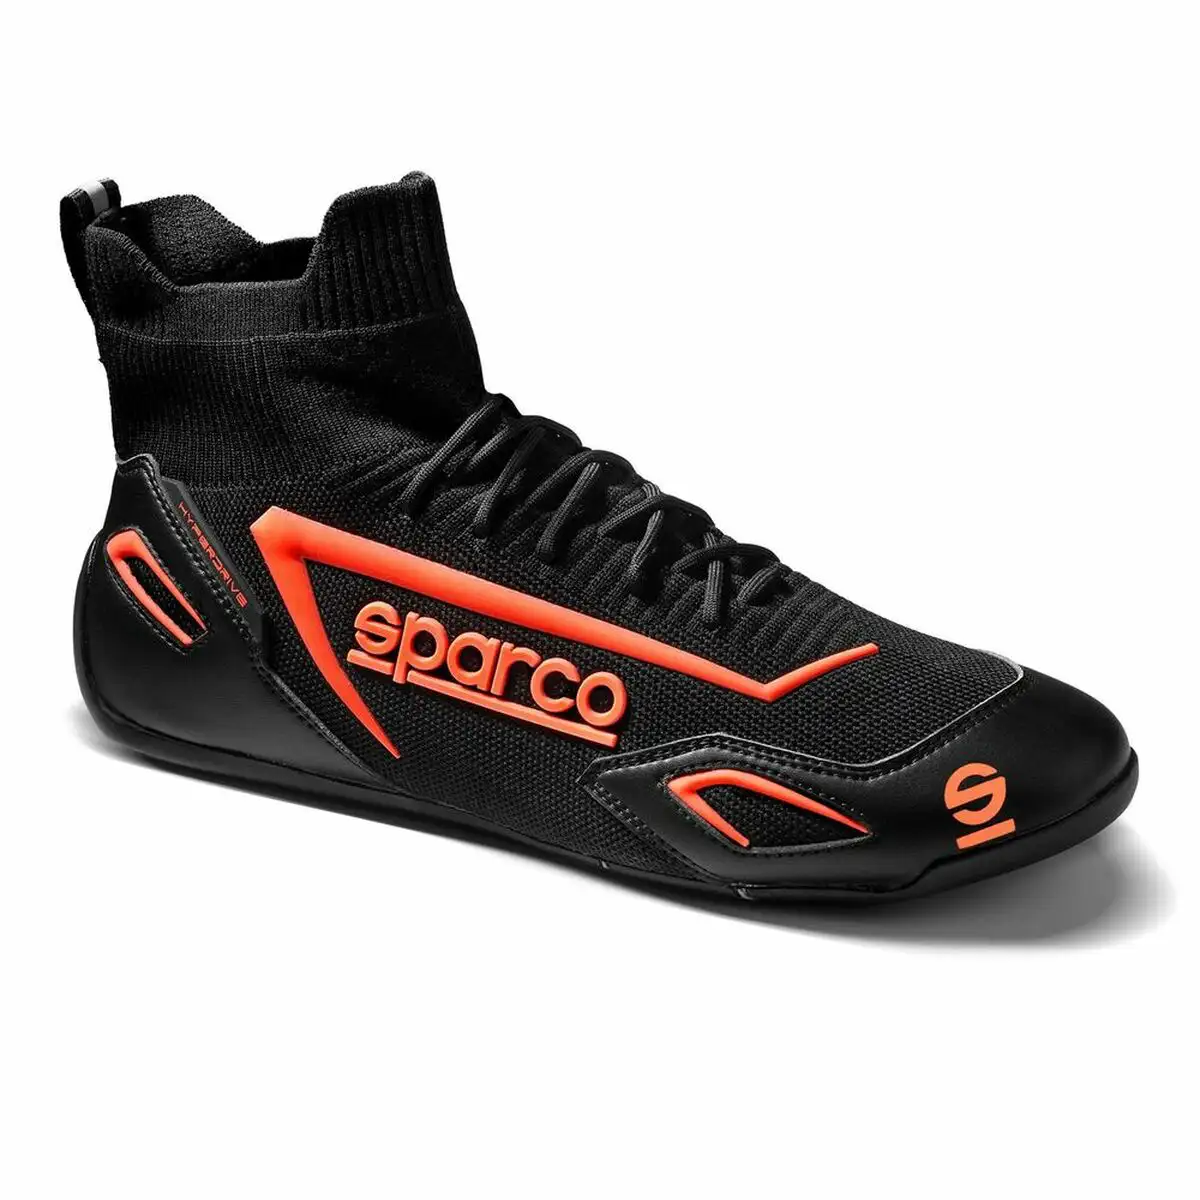 Chaussures de course sparco hyperdrive noir orange_9405. DIAYTAR SENEGAL - L'Art de Vivre avec Authenticité. Explorez notre gamme de produits artisanaux et découvrez des articles qui apportent une touche unique à votre vie.